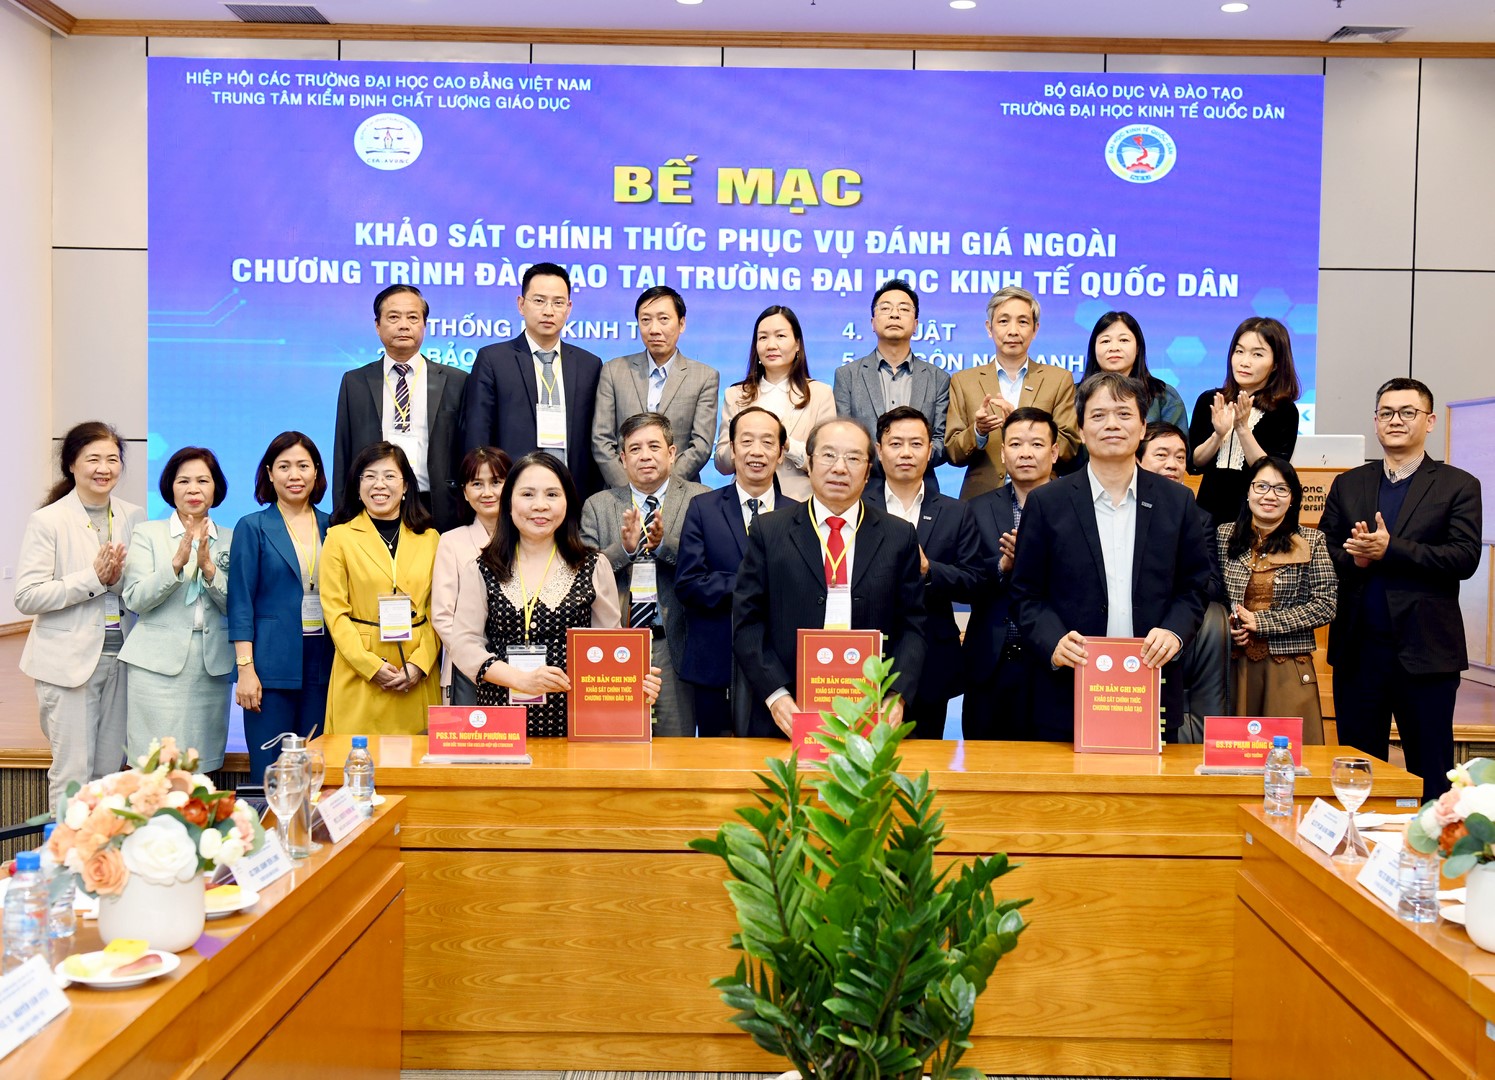 Trường Đại học Kinh tế Quốc dân và Trung tâm Kiểm định chất lượng giáo dục, thuộc Hiệp hội các trường đại học, cao đẳng Việt Nam ký kết biên bản ghi n